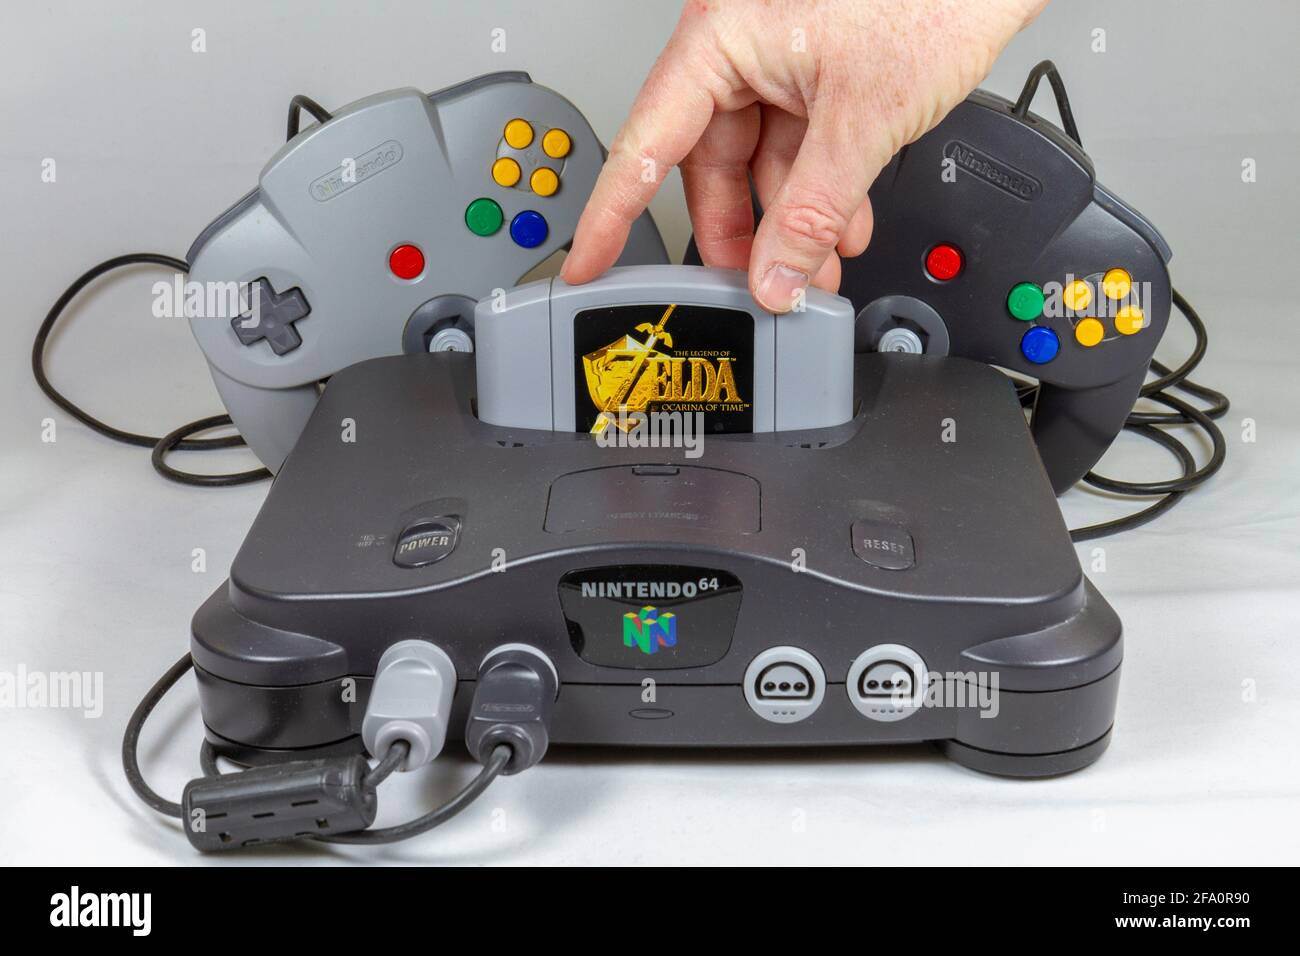 The Legend of Zelda: Ocarina of Time Game dans une console de jeux vidéo  Nintendo 64 ou N64, une console de jeux vidéo de cinquième génération  lancée en 1996 au Japon Photo